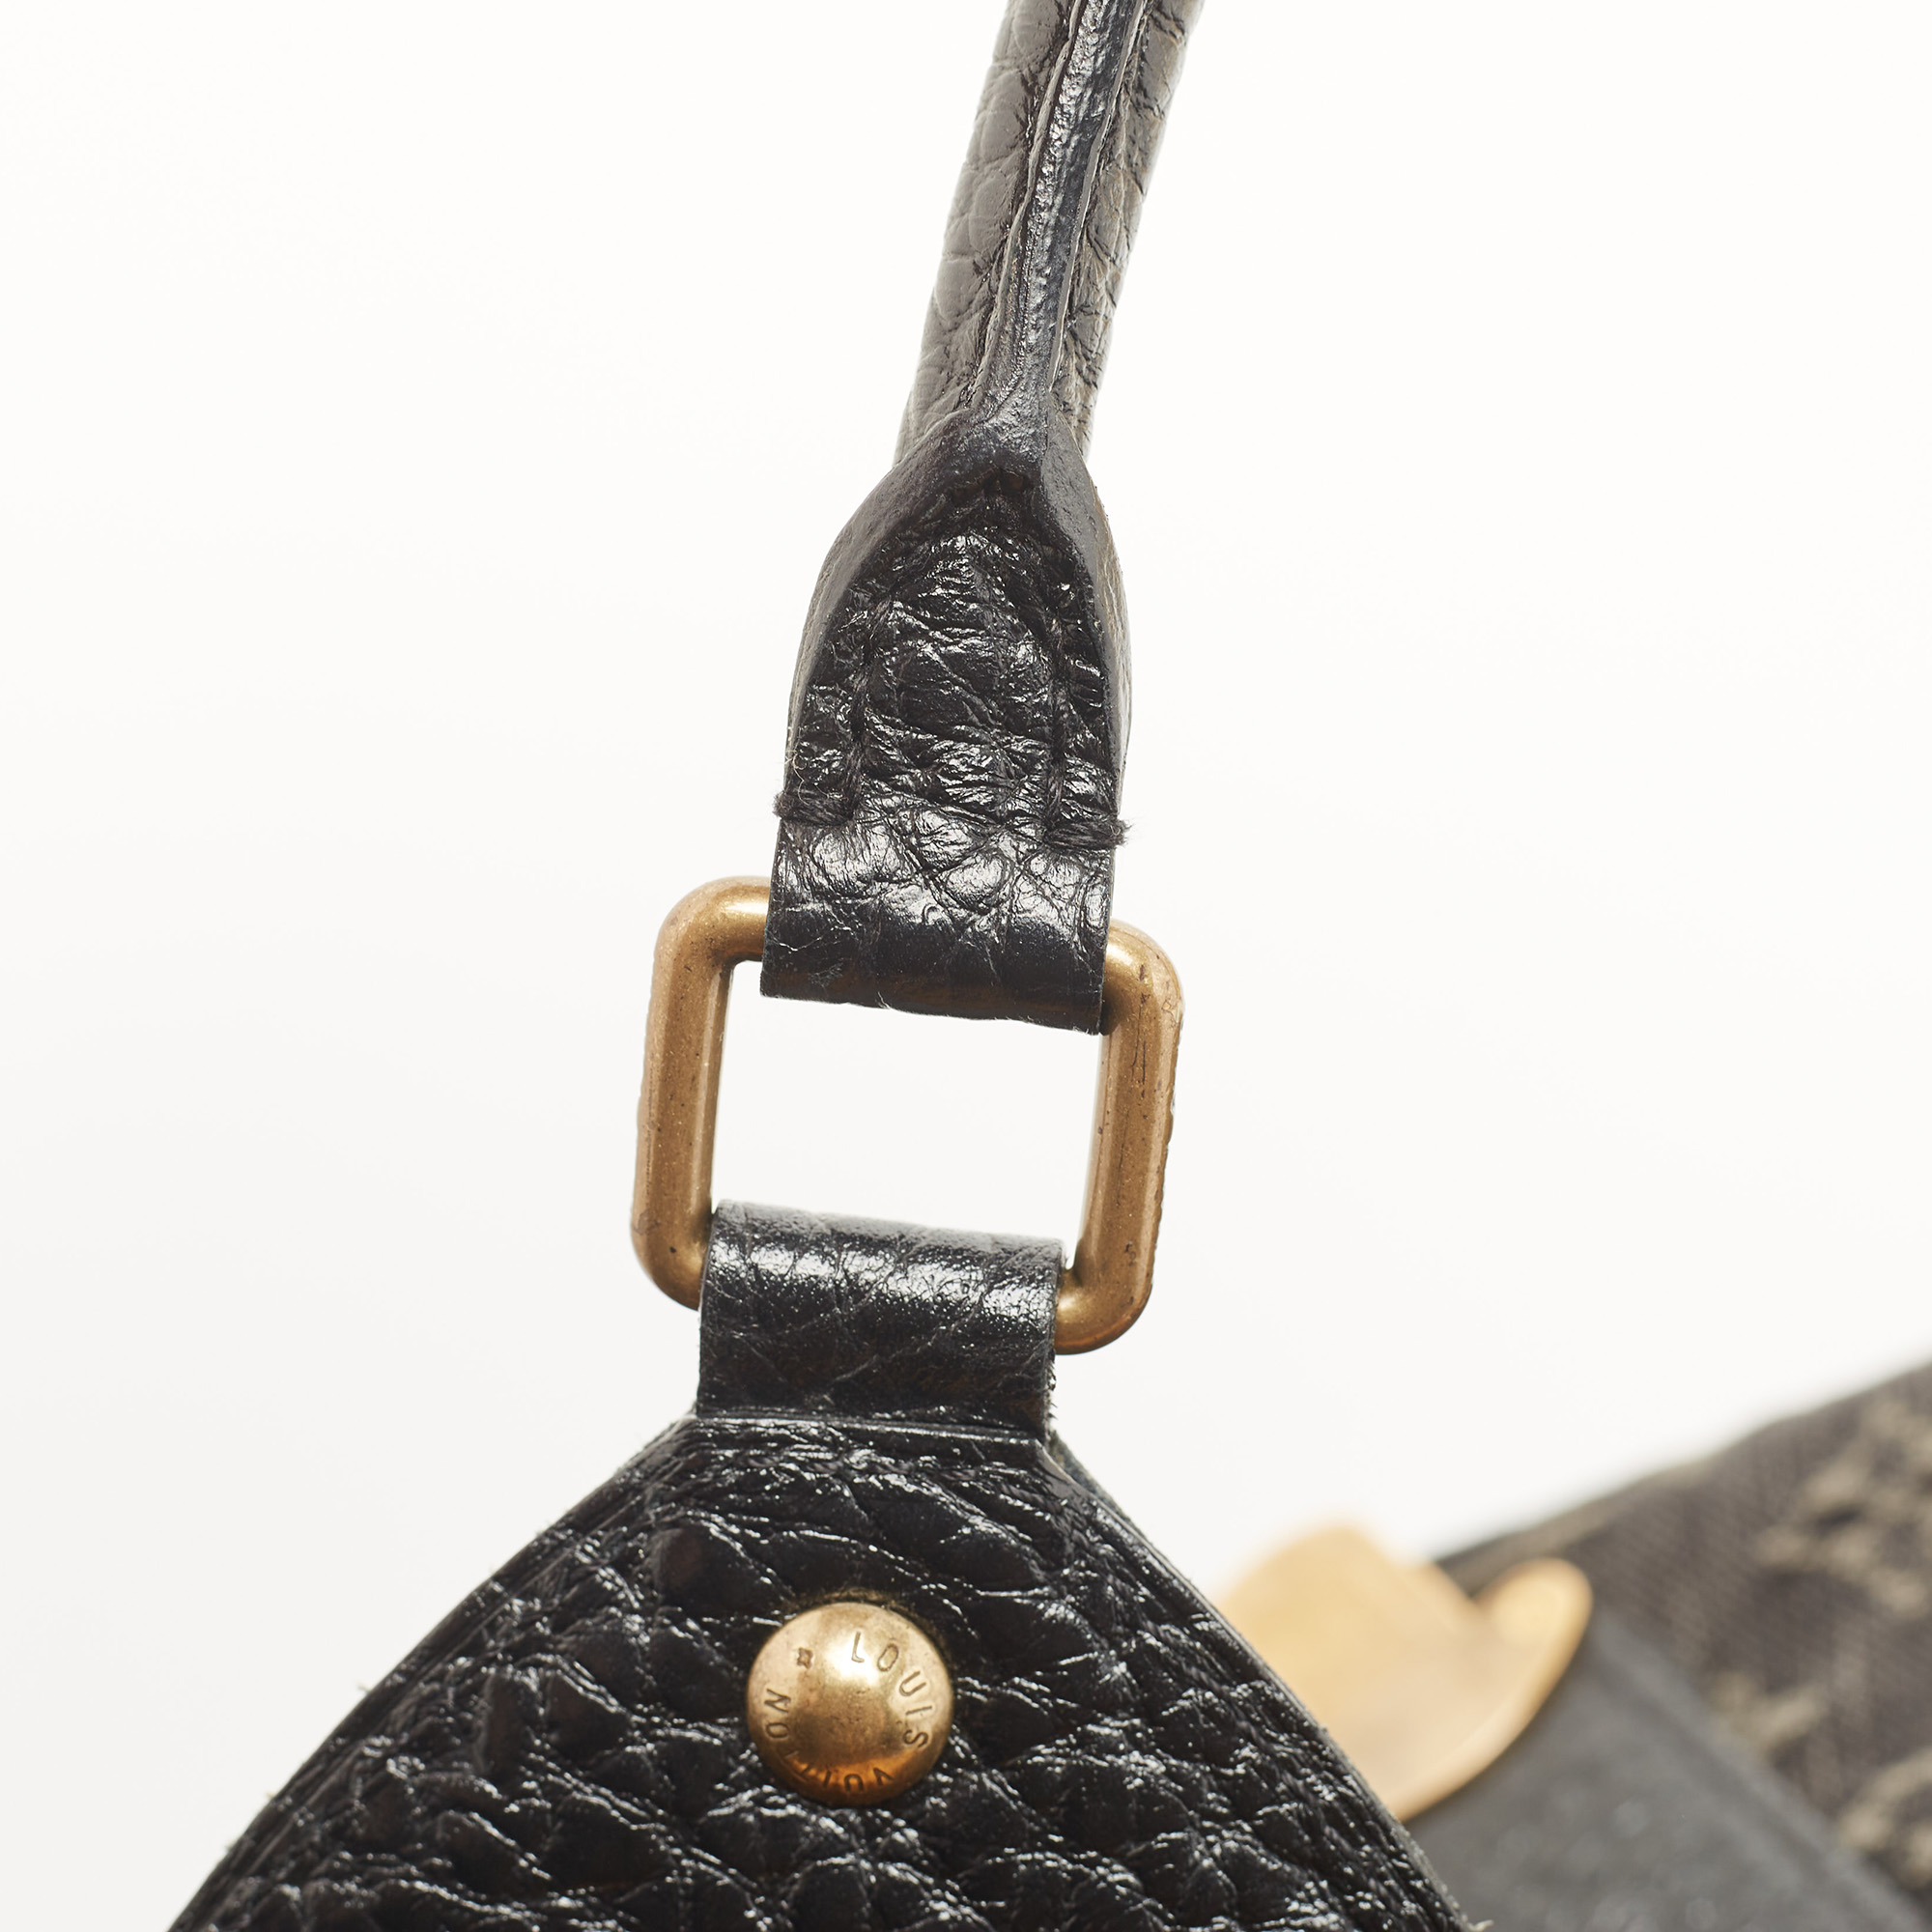 Louis Vuitton Black Denim Monogram Surya XL Bag